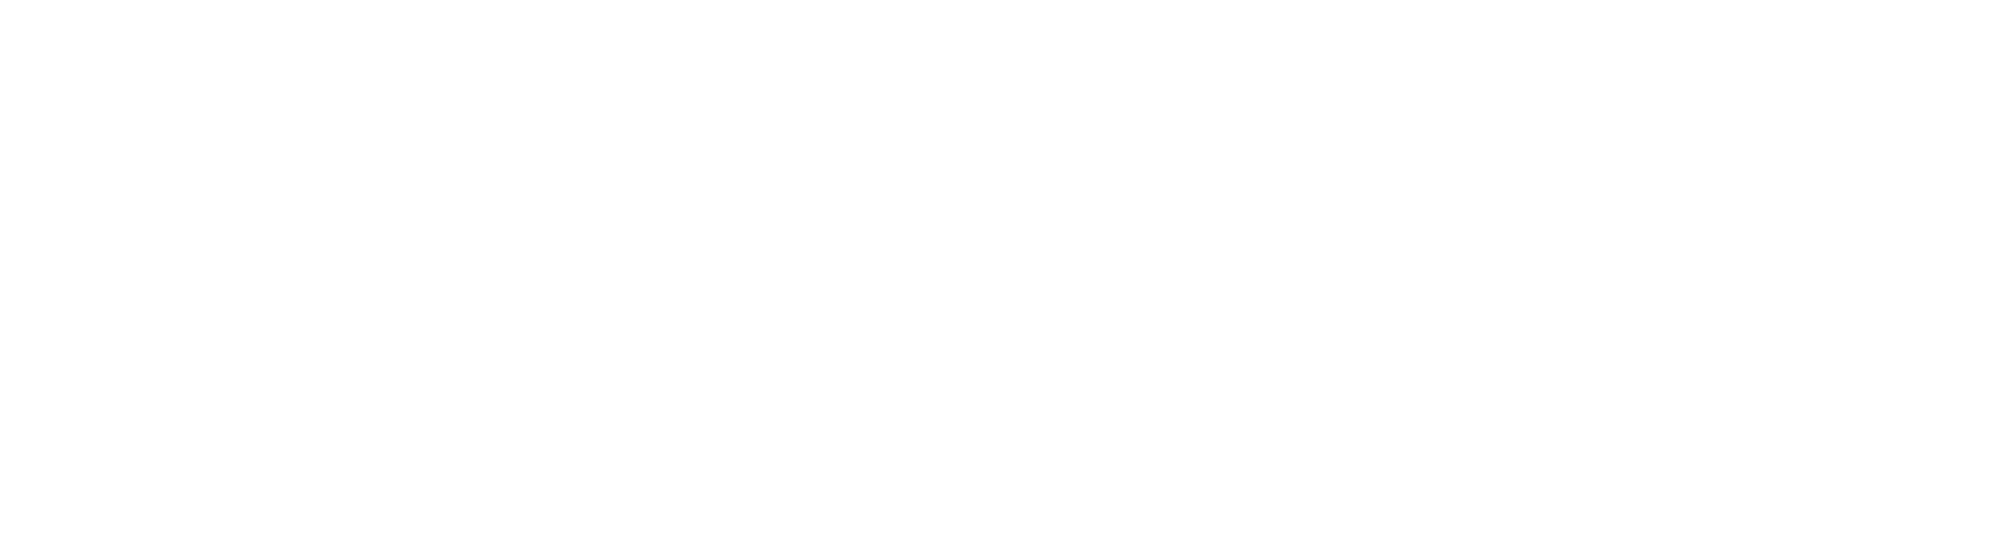 Claranet Aliados